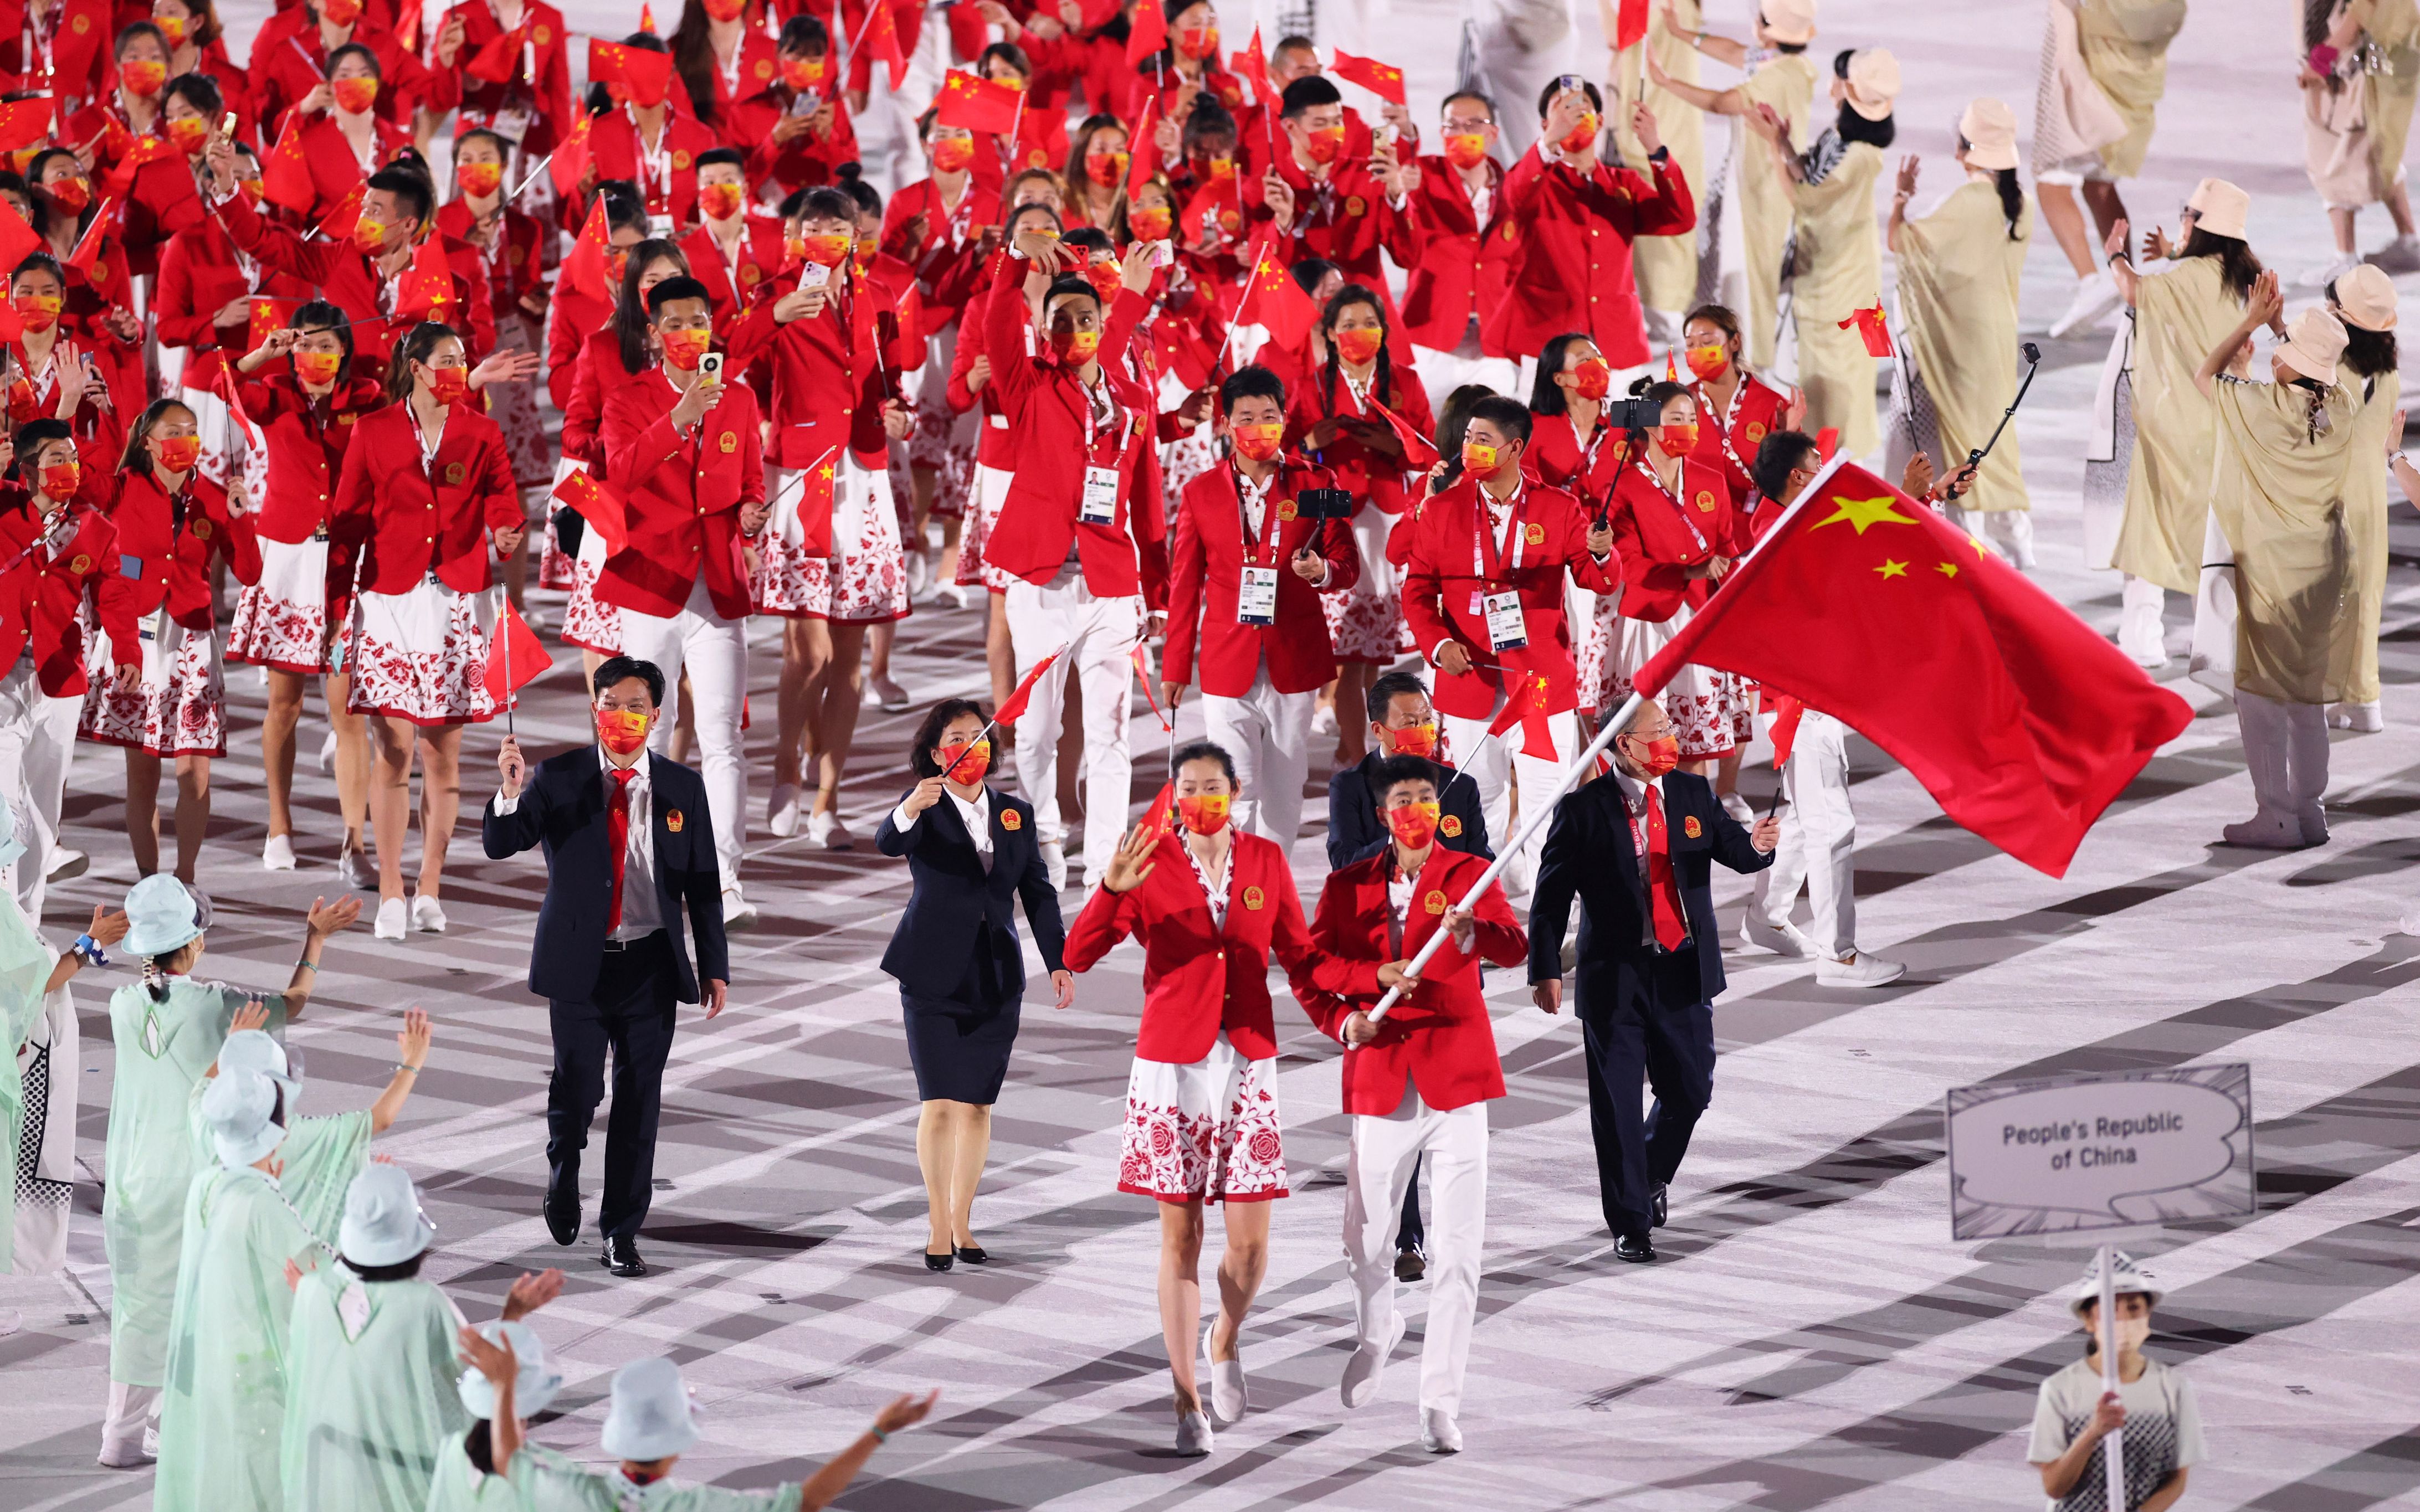 新闻8点见丨延期一年后东京奥运会开幕中国红亮相惊艳全场